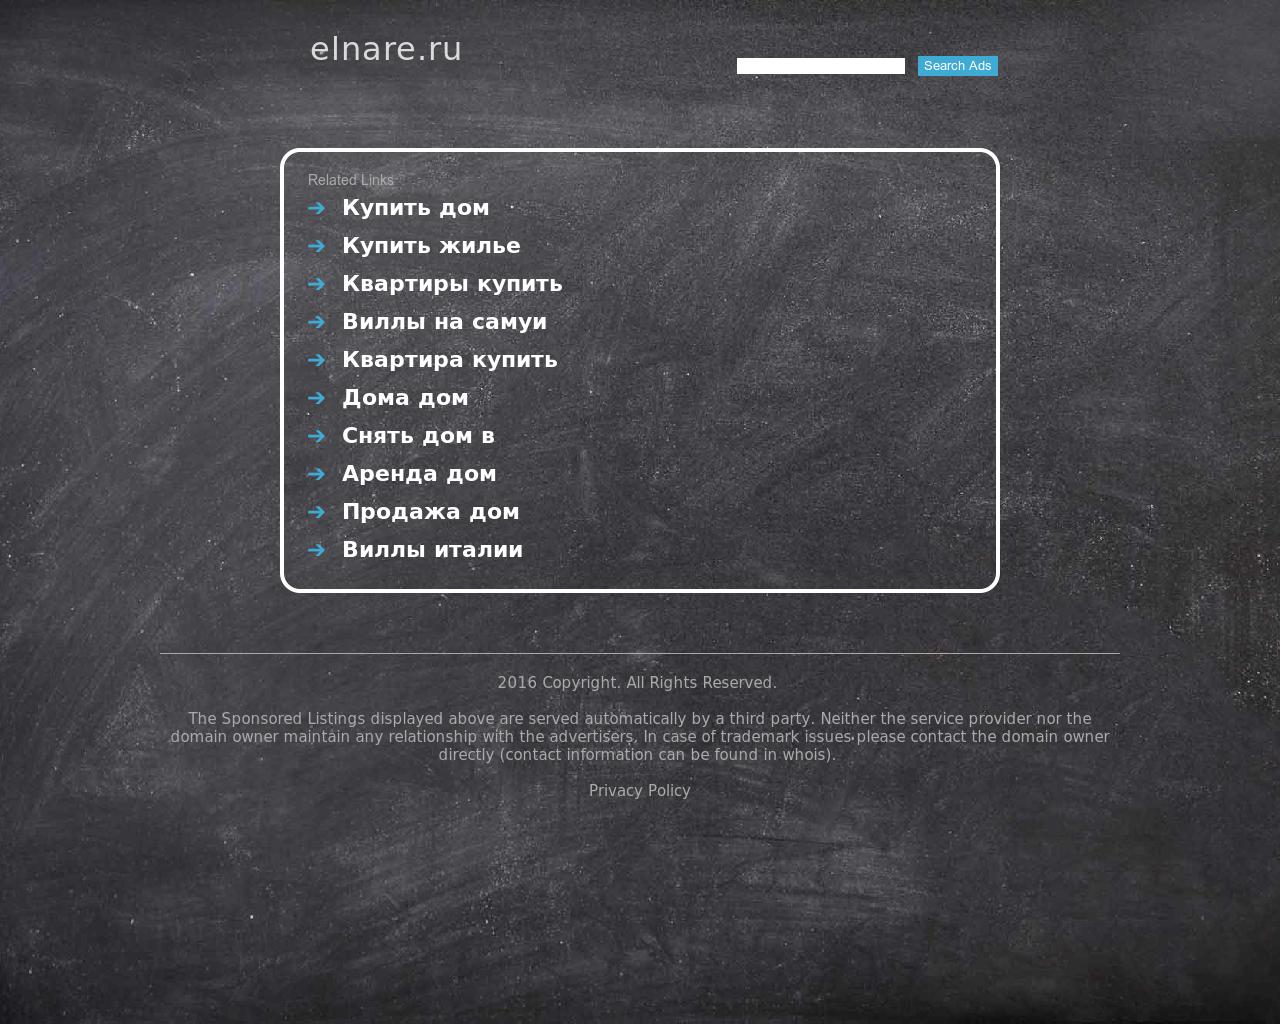 Изображение сайта elnare.ru в разрешении 1280x1024